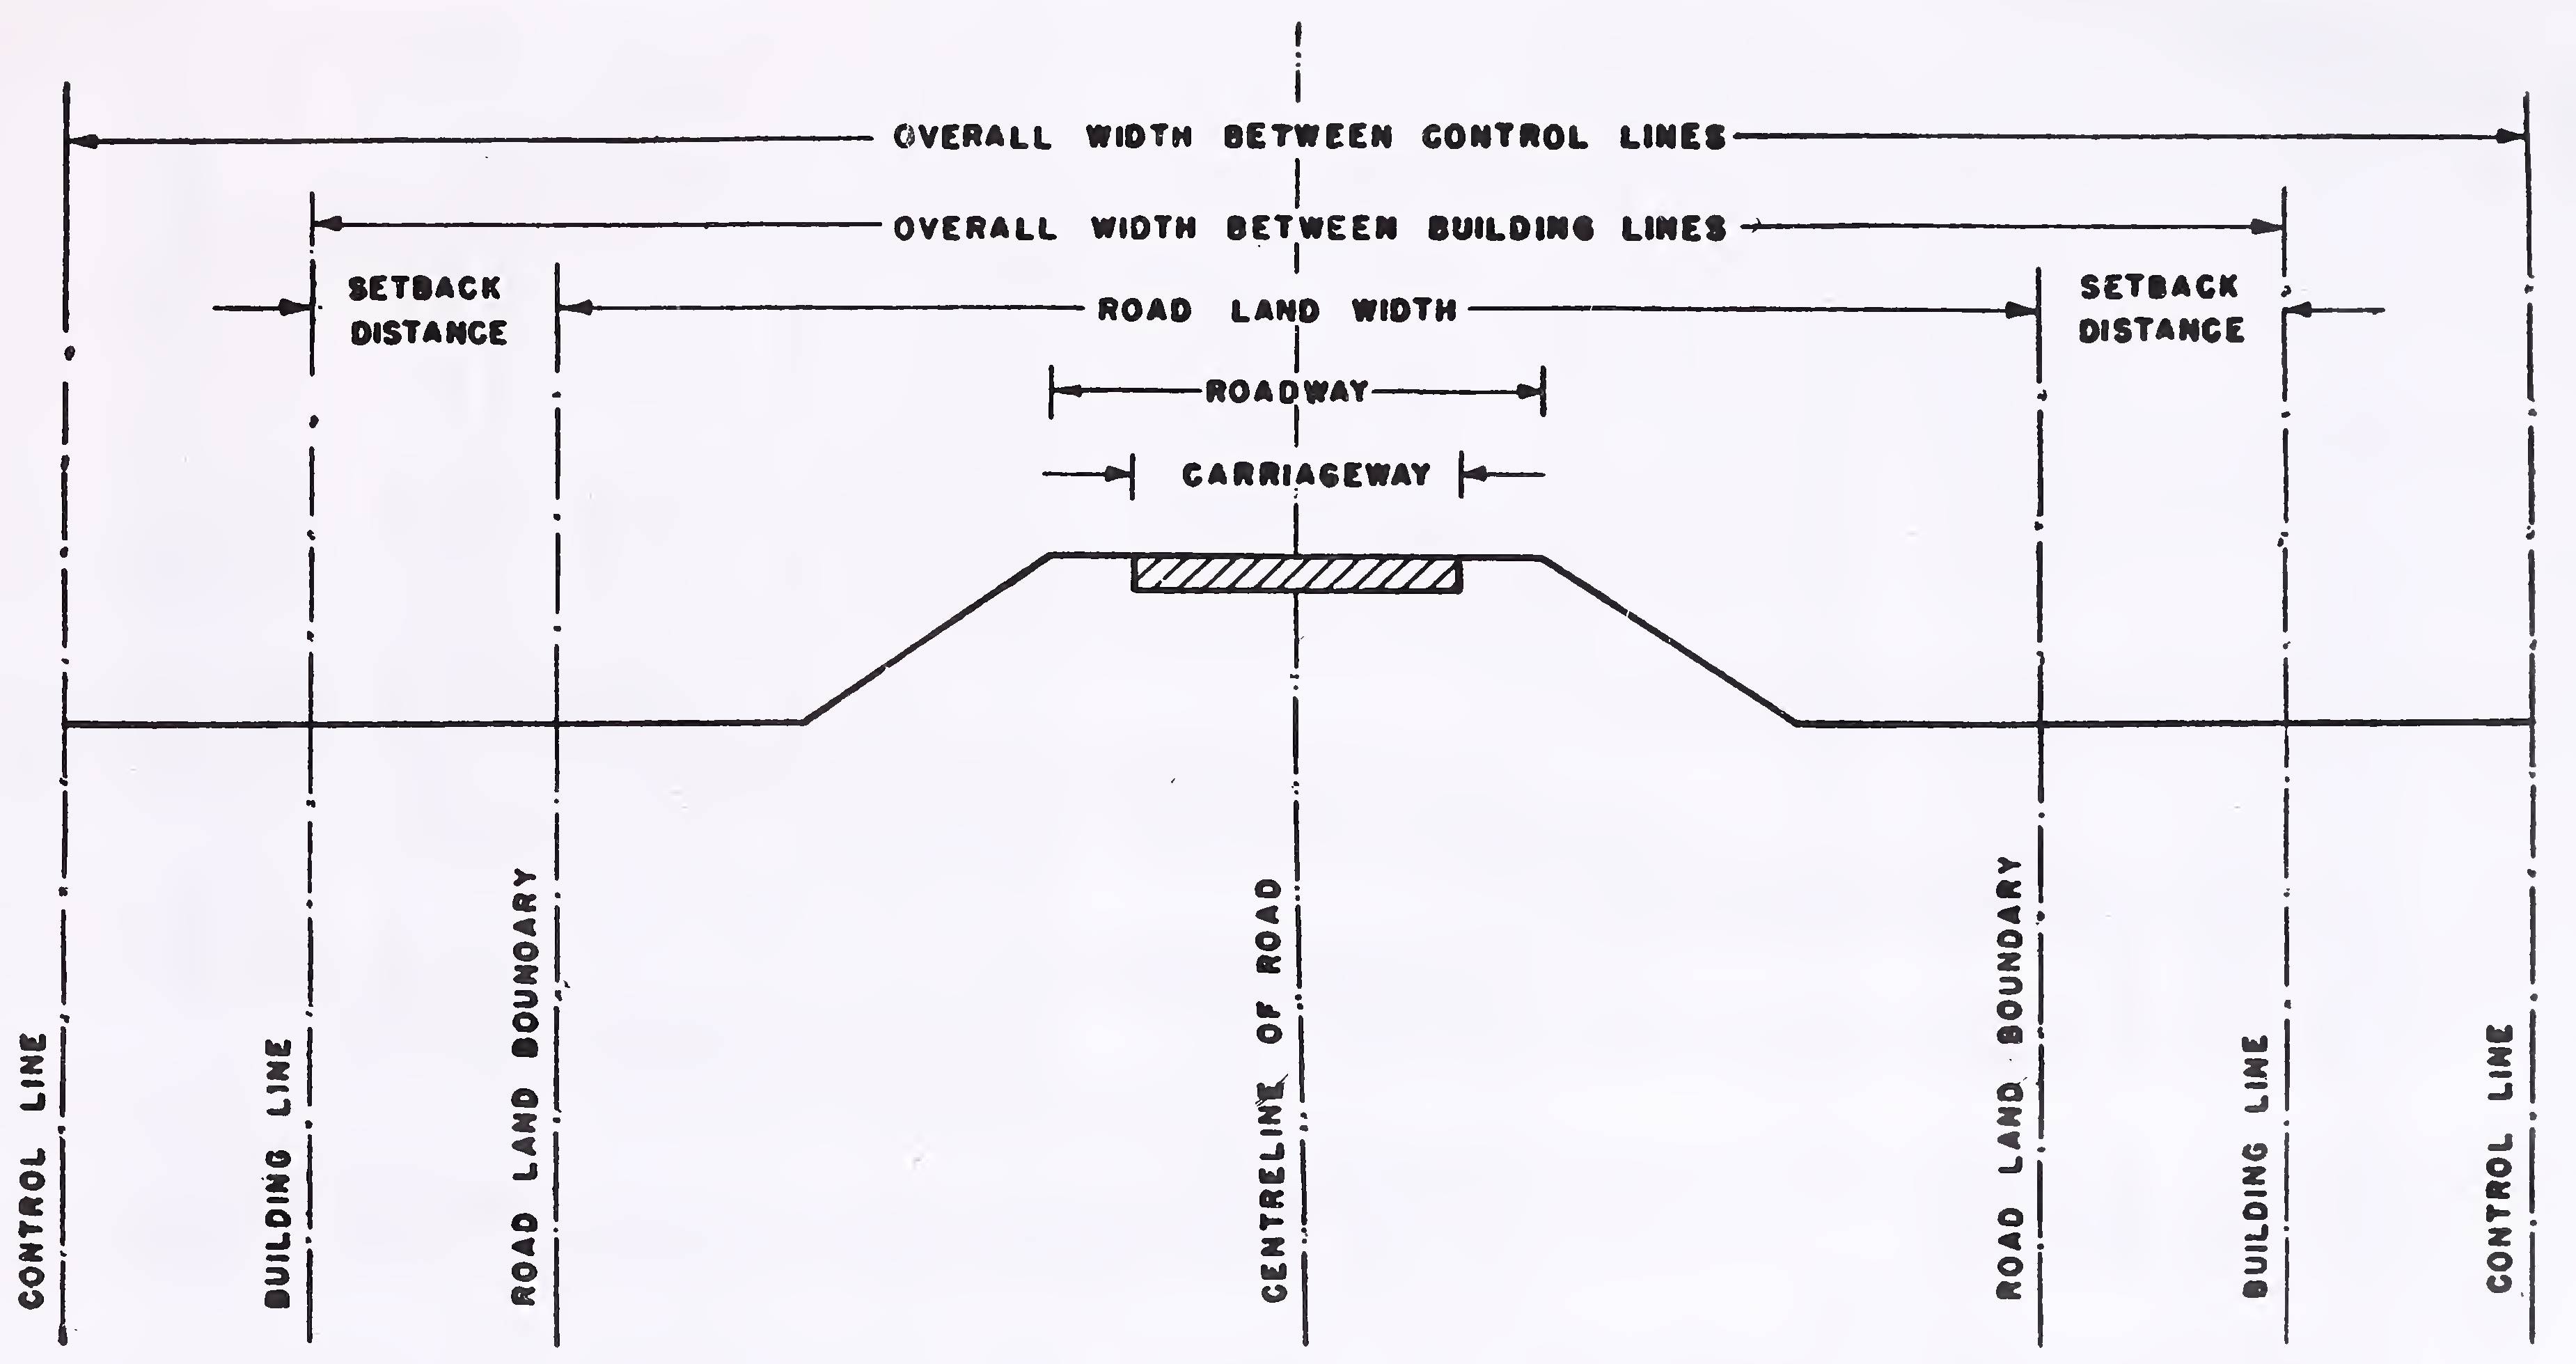 अंजीर। 1. सड़क की भूमि की सीमा, निर्माण लाइनें और नियंत्रण रेखा